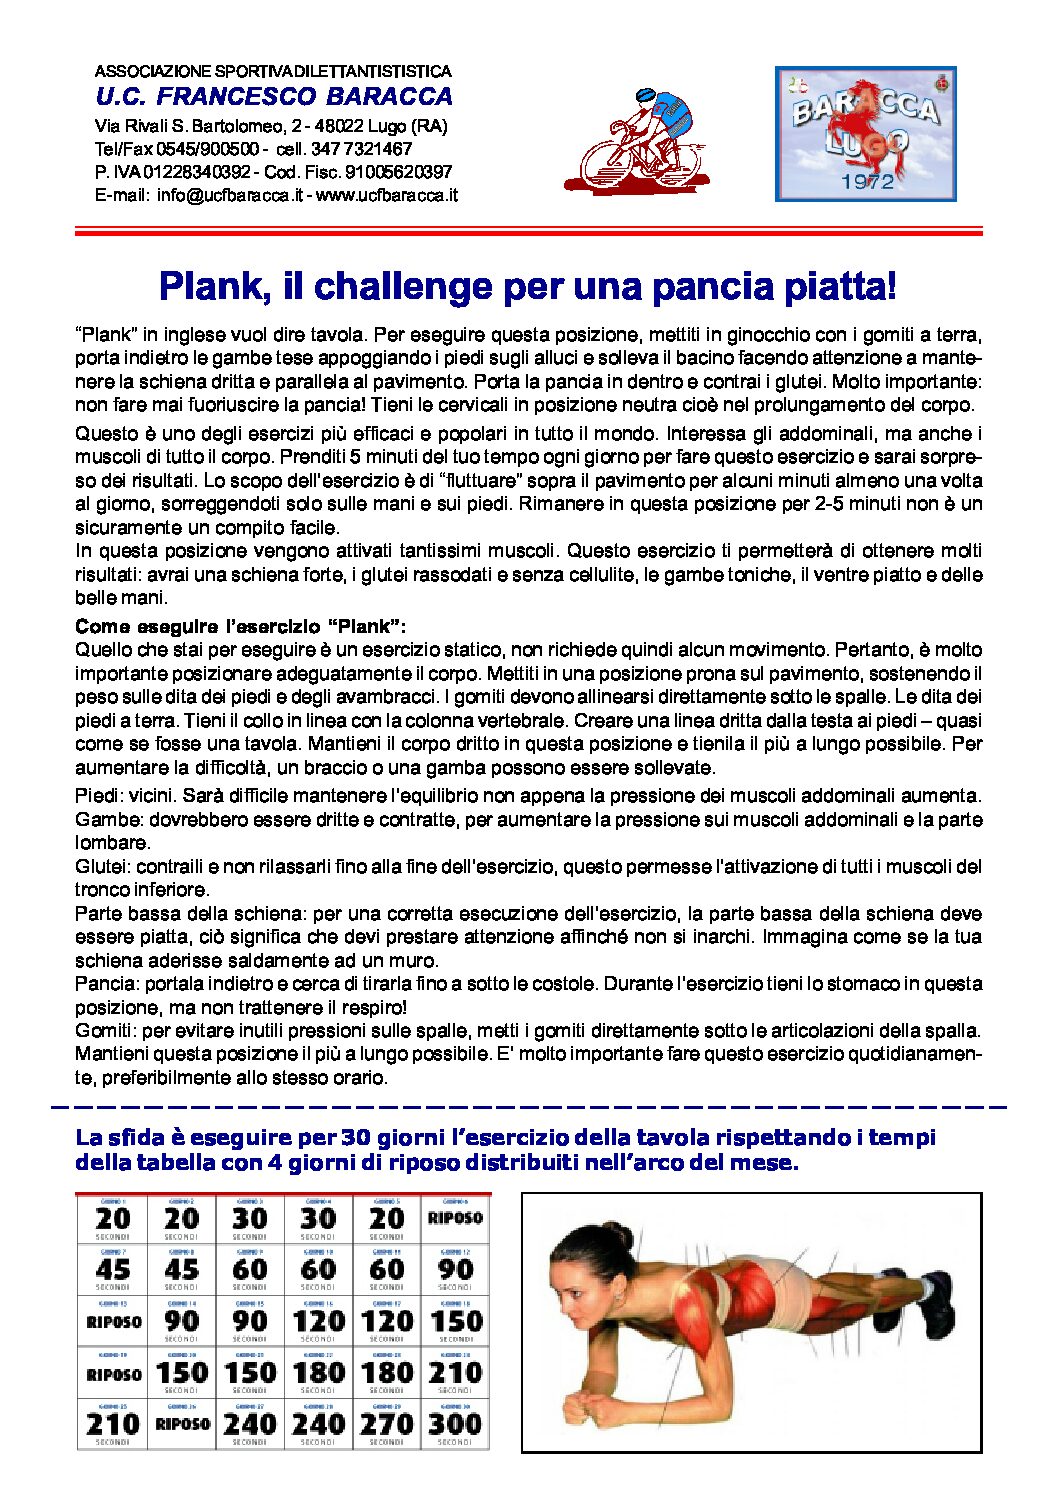 Plank il challenge per una pancia piatta pdf